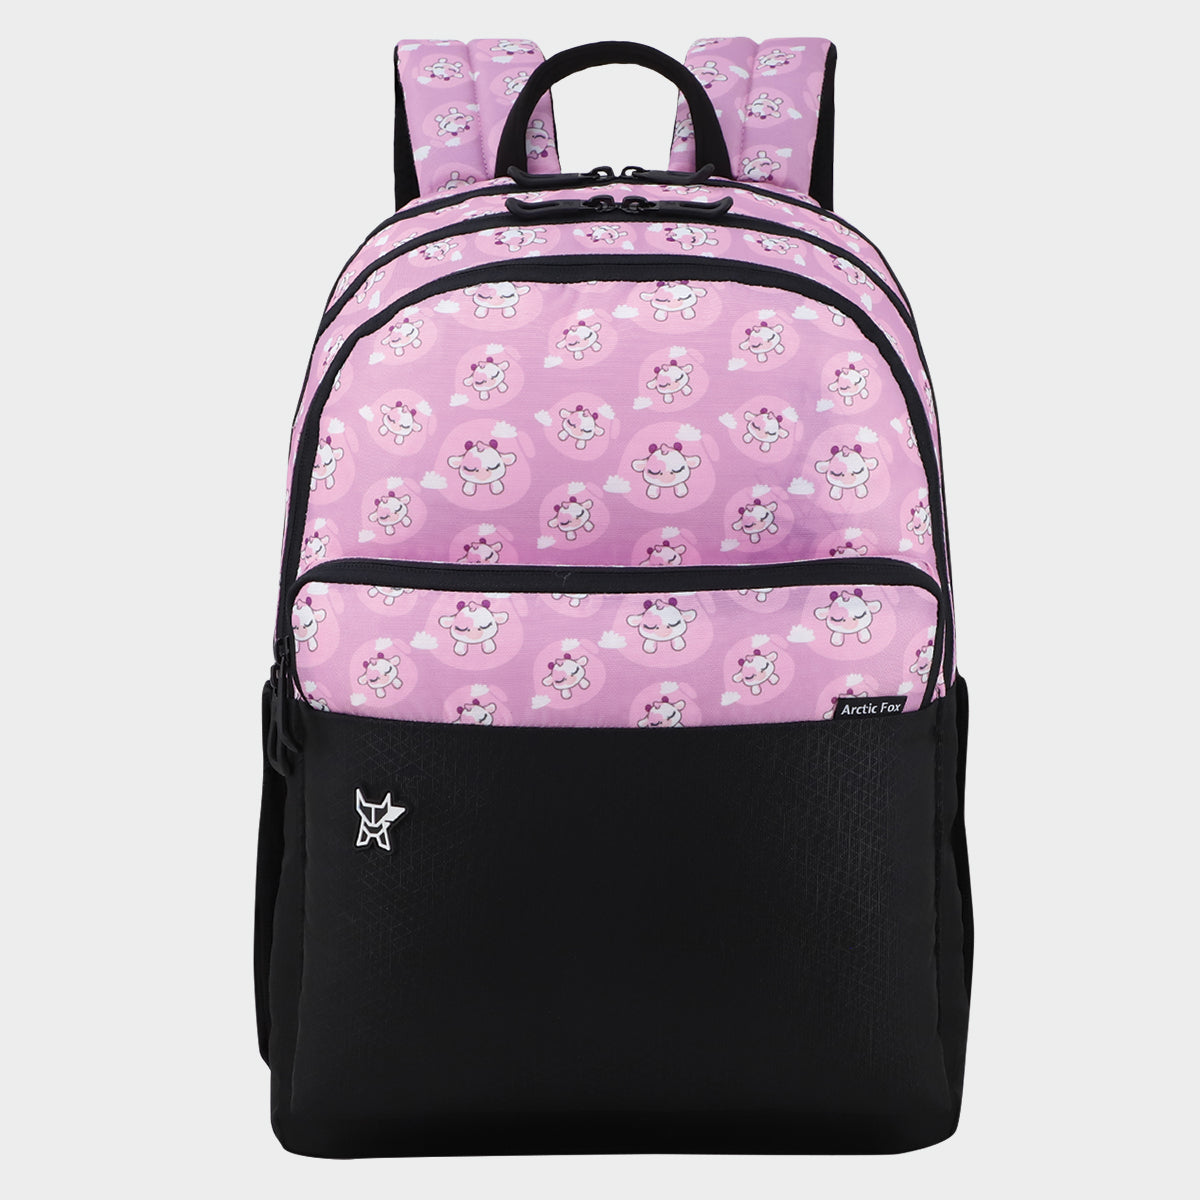 Backpack for Women, Nylon Travel Backpack Purse Black Small School Bag for  Girls | eBay